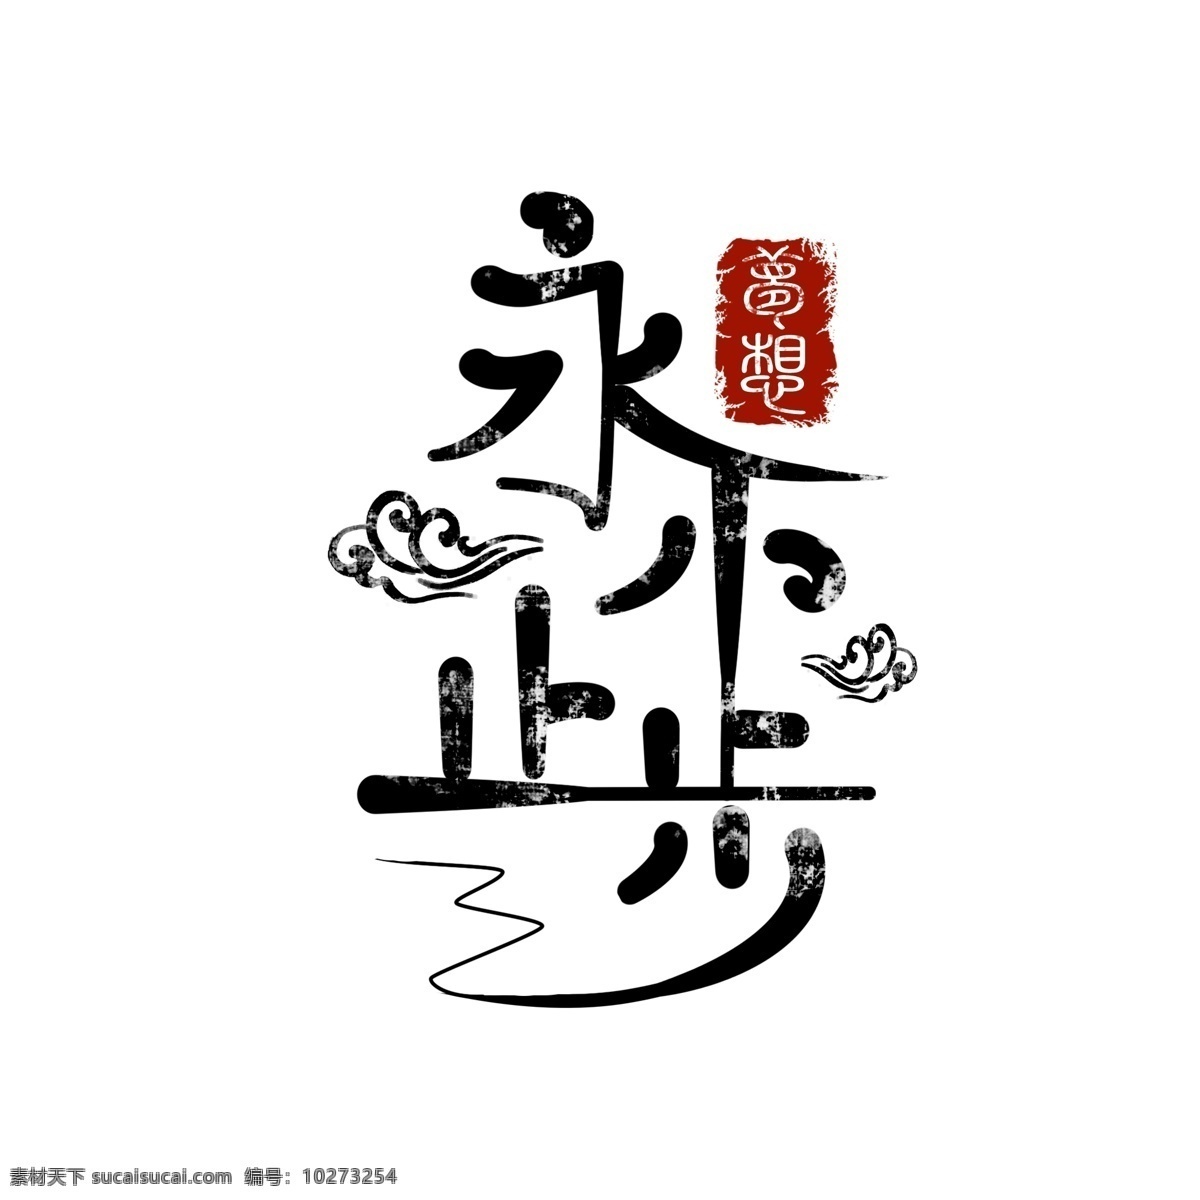 永不 止步 中国 风 手绘 创意 艺术 字 永不止步 中国风 梦想 手绘字体 创意艺术字